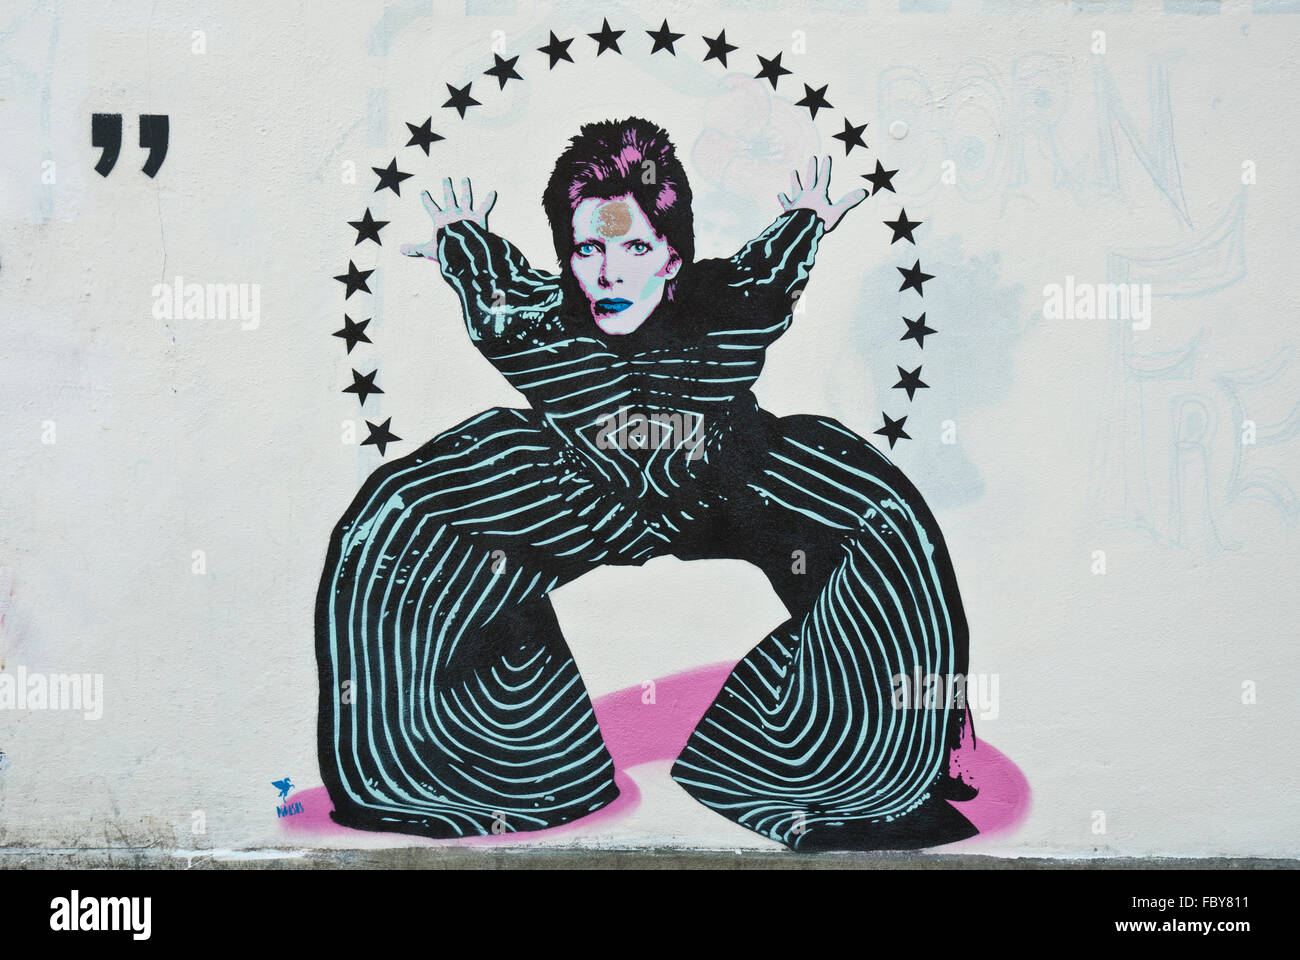 Graffiti de David Bowie Aladdin Sane 'posant en costume rayé', avec halo d'étoiles, hommage par Pegasus. Banque D'Images